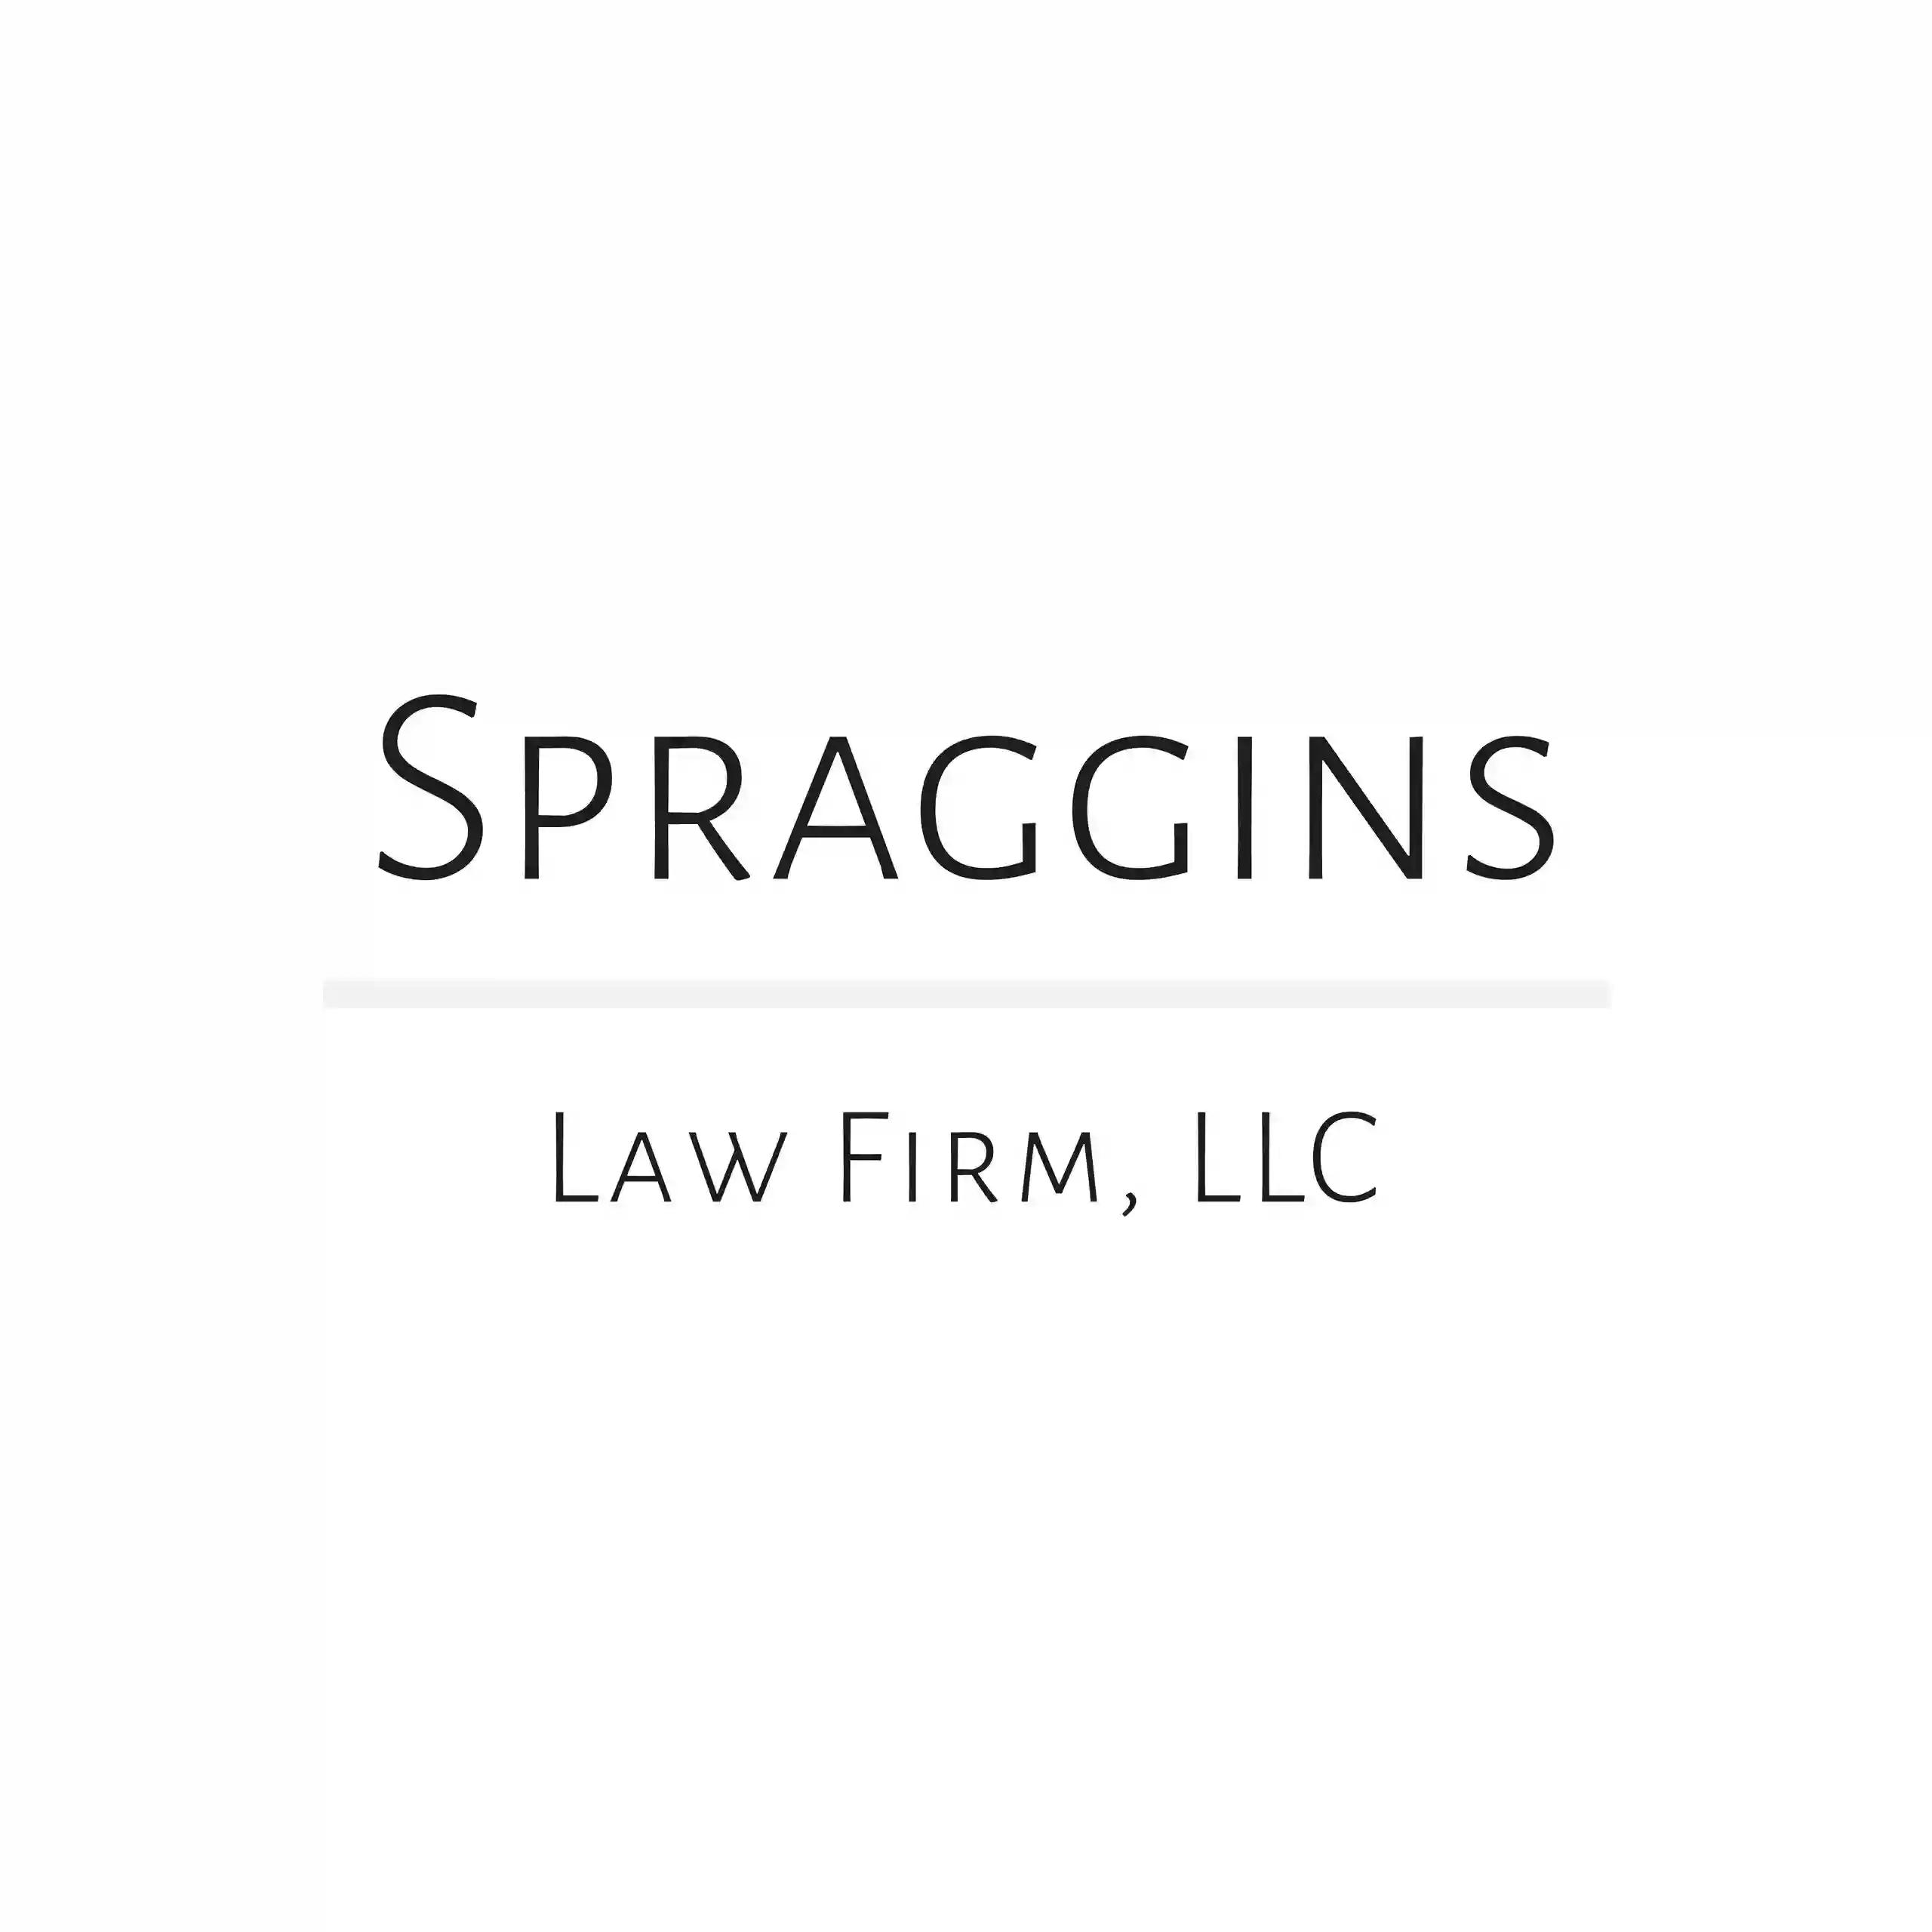 Spraggins Law Firm, LLC